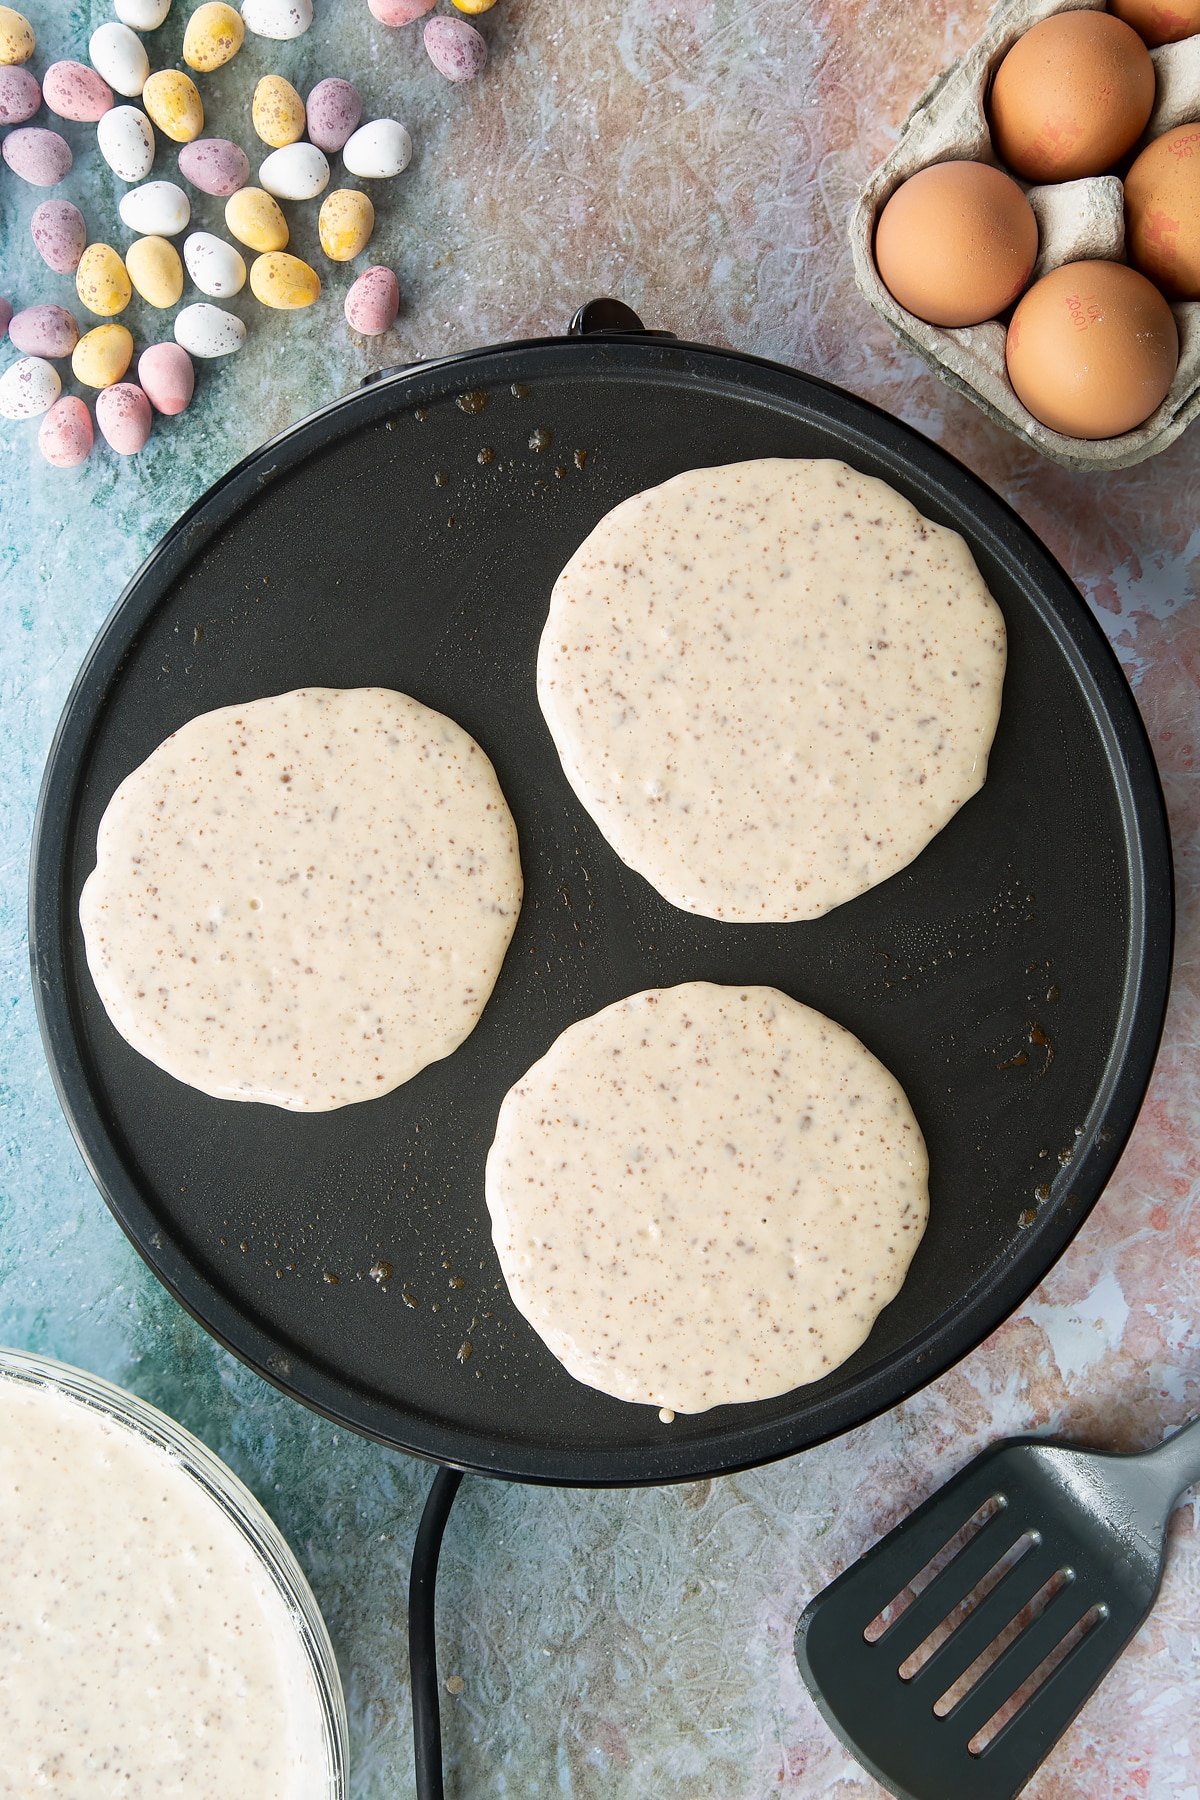 Spoonfuls of Mini Egg pancake batter on a hot pan. Ingredients to make Mini Egg pancakes surround the pan.